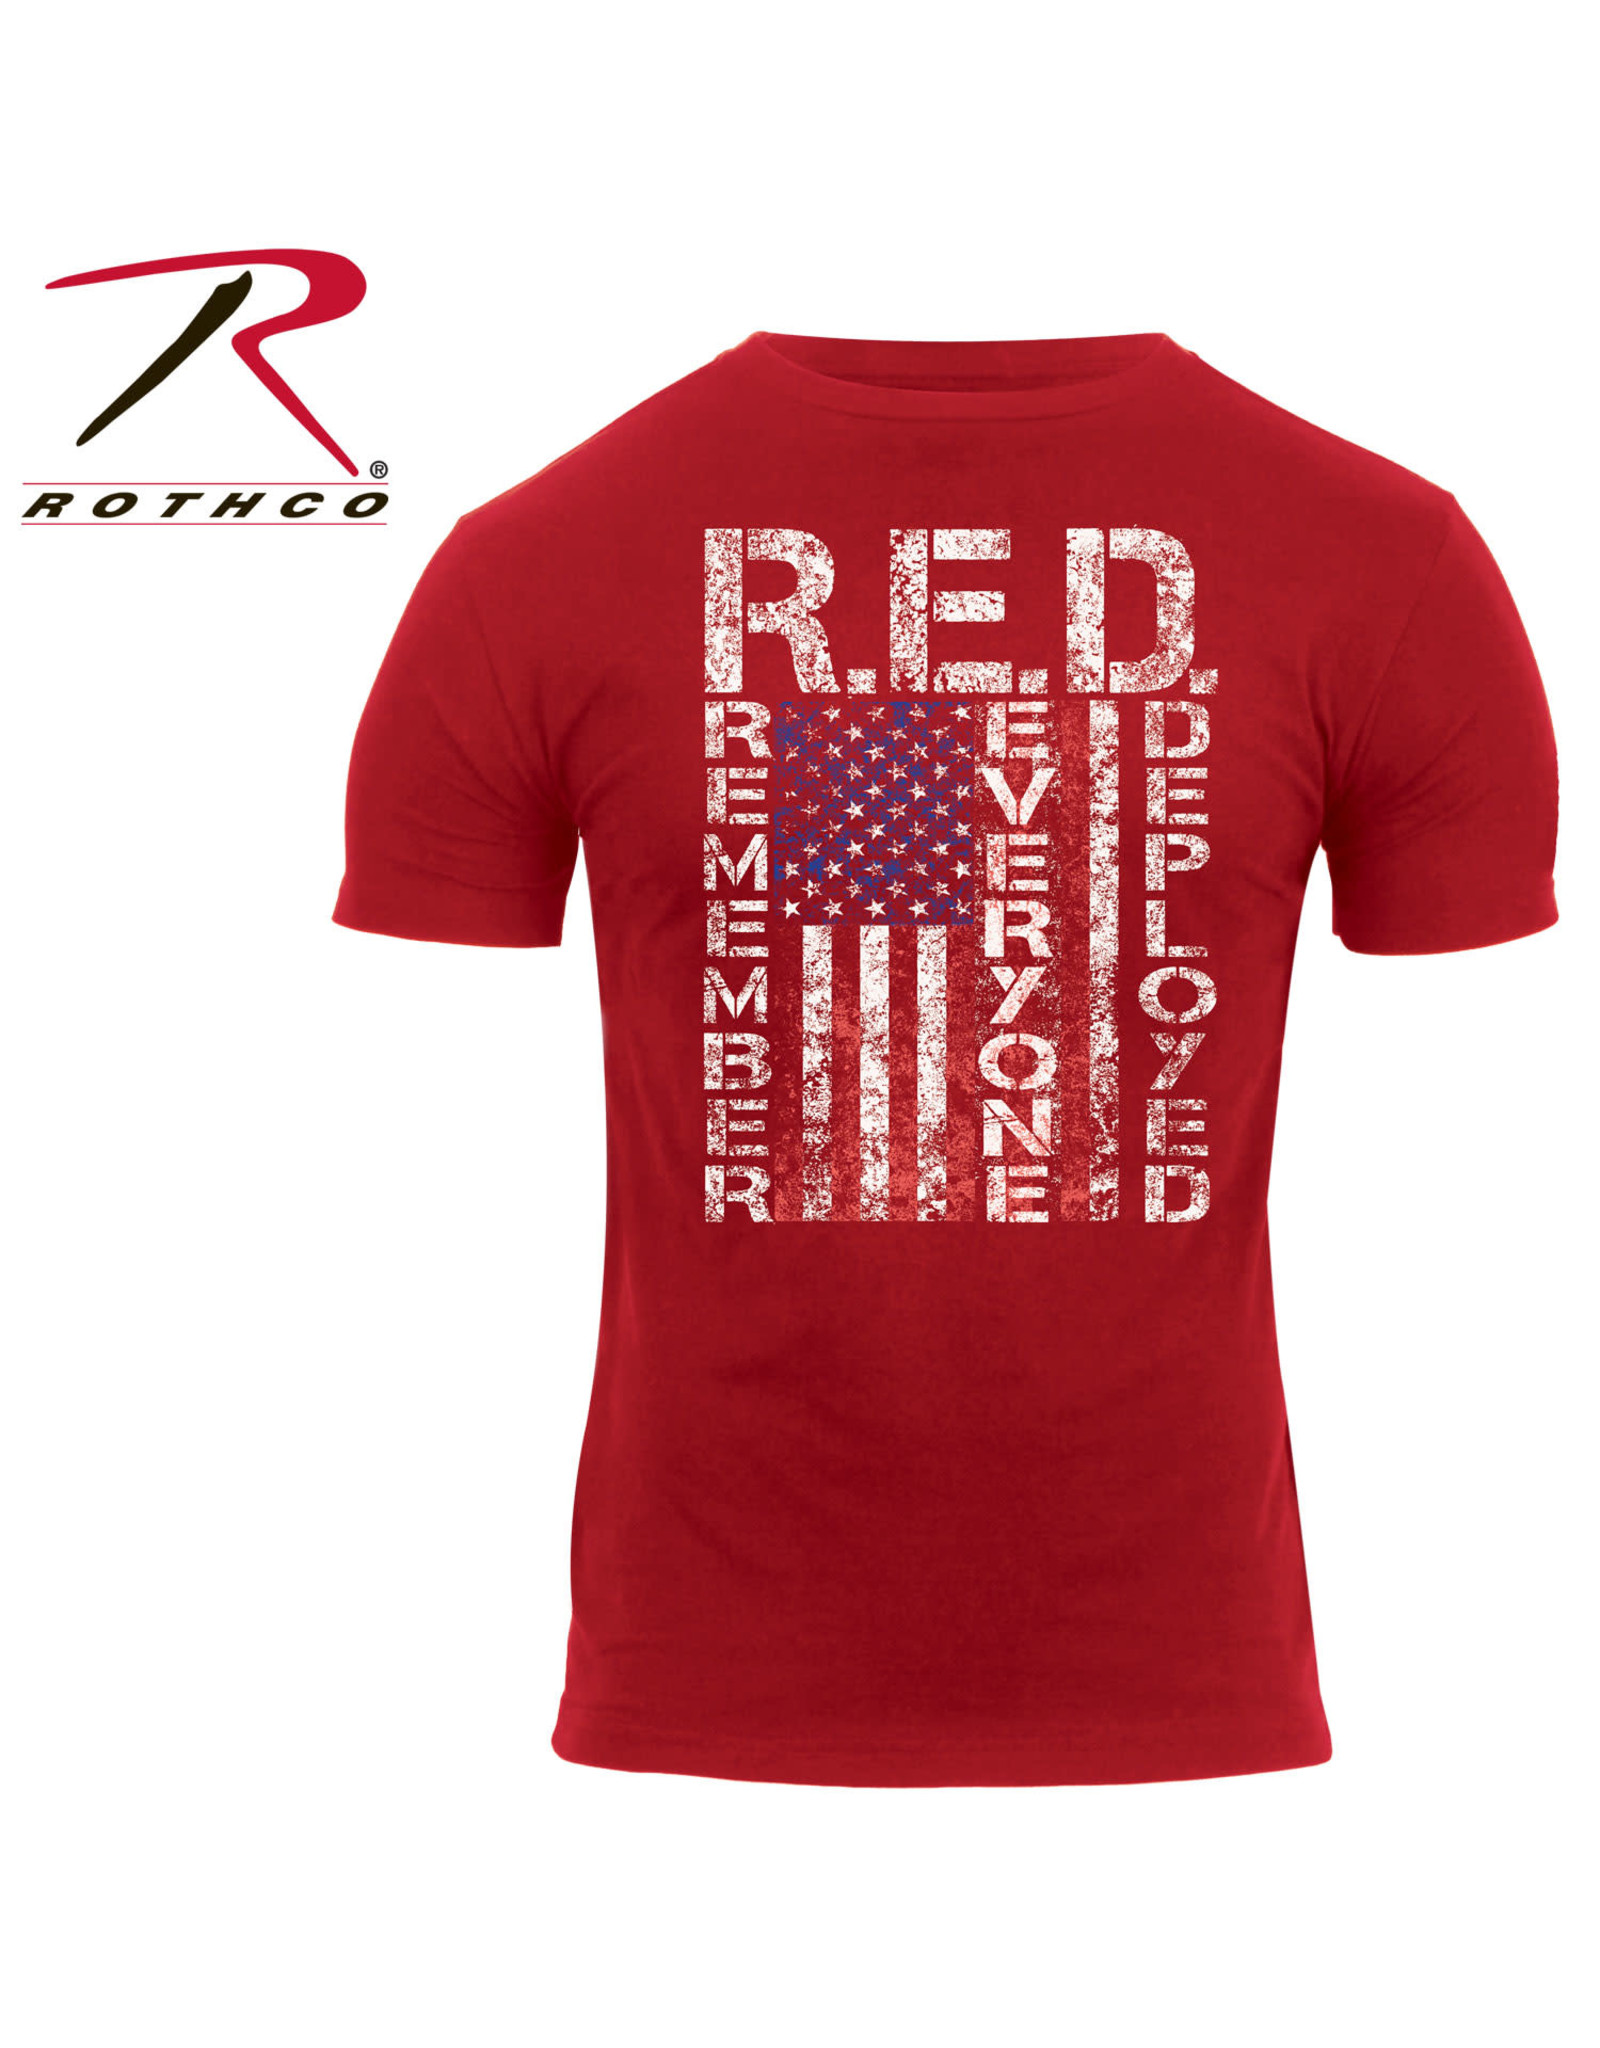 Rothco R.E.D. T-Shirt